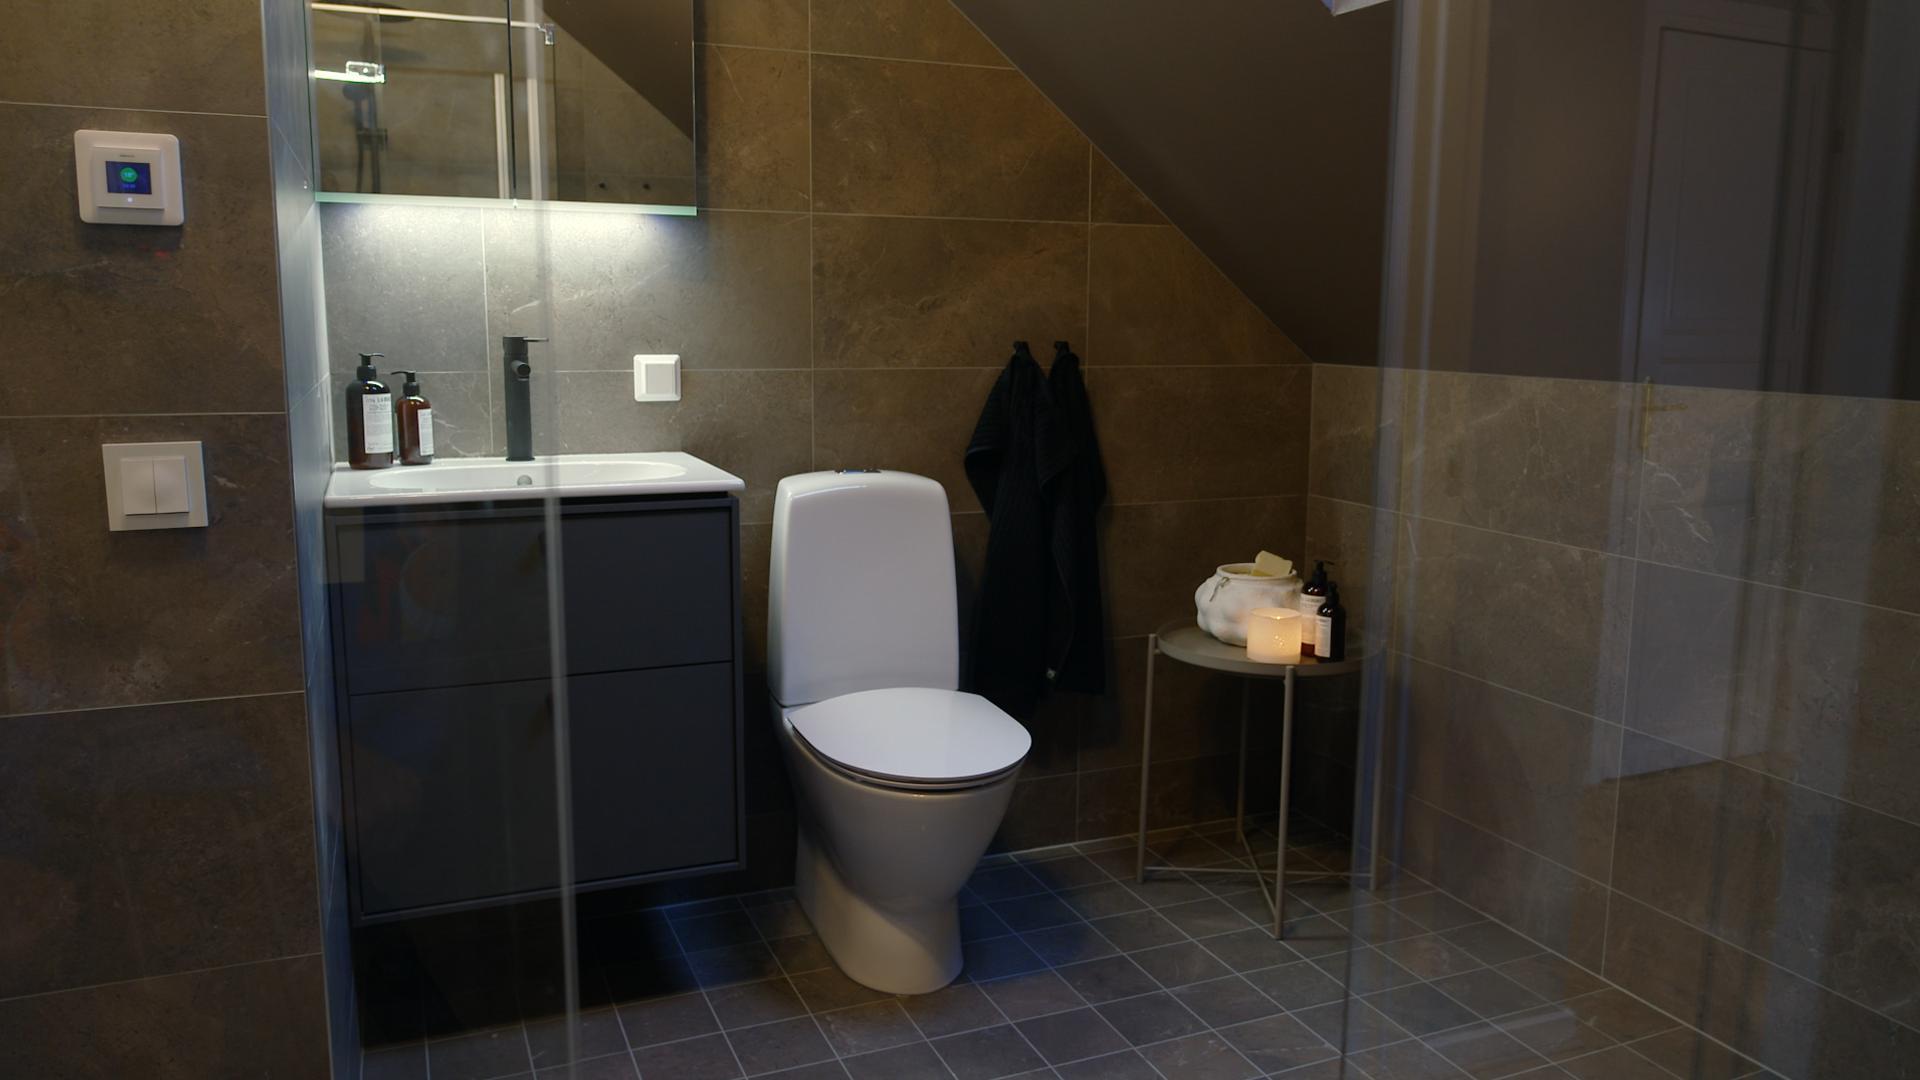 Plumbing fixture, Interior design, Tile flooring, Bathroom, Floor, Sink, Wall, Toilet, House